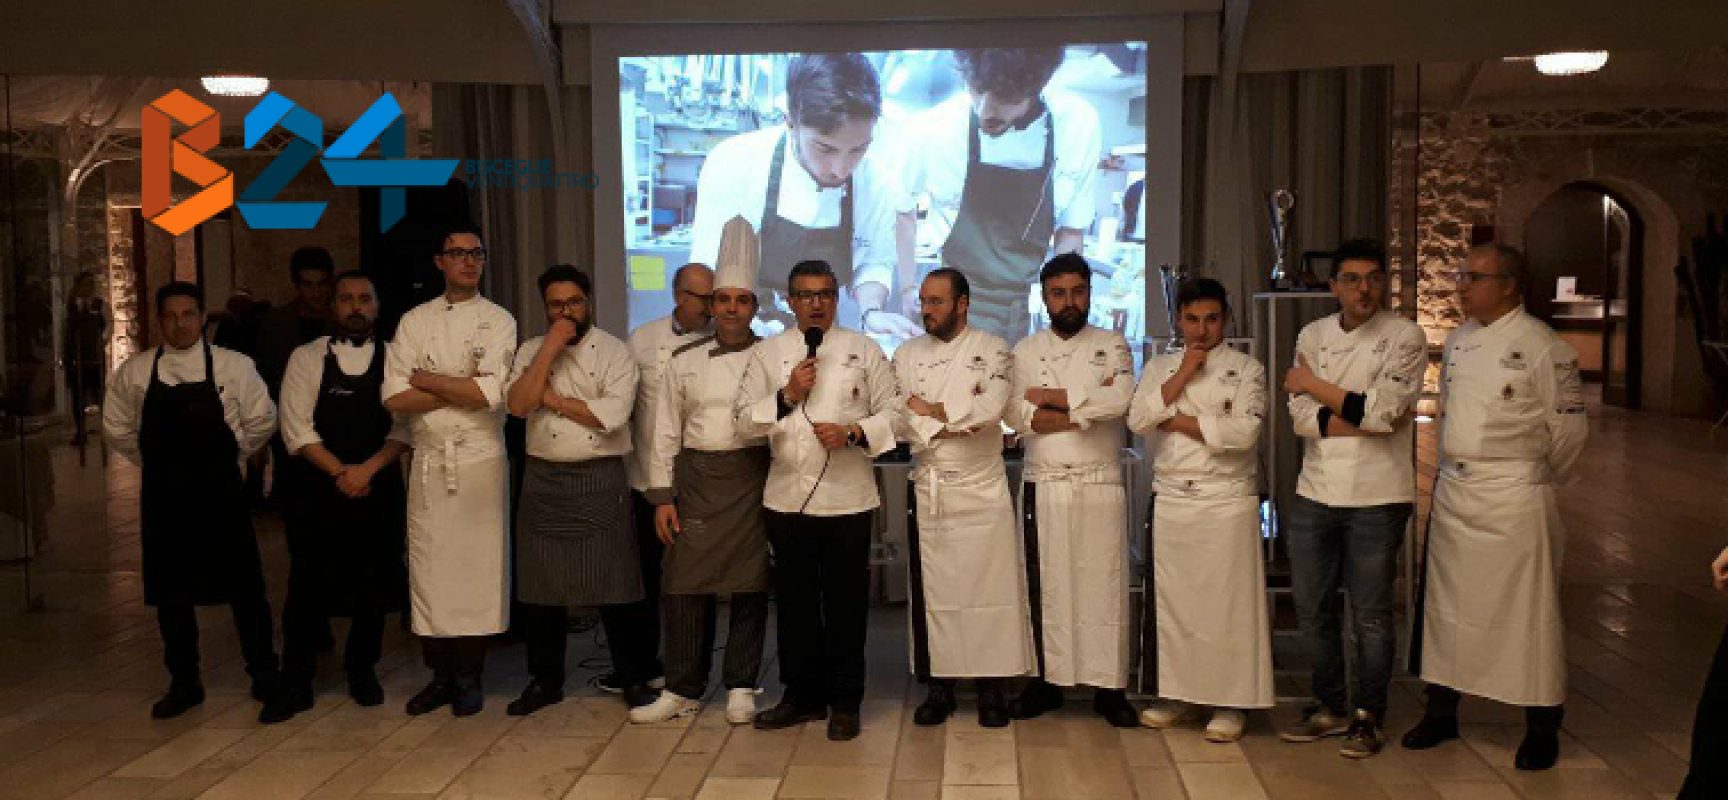 Il Team Culinary Dolmen premia i migliori chef di oggi e di domani / FOTO